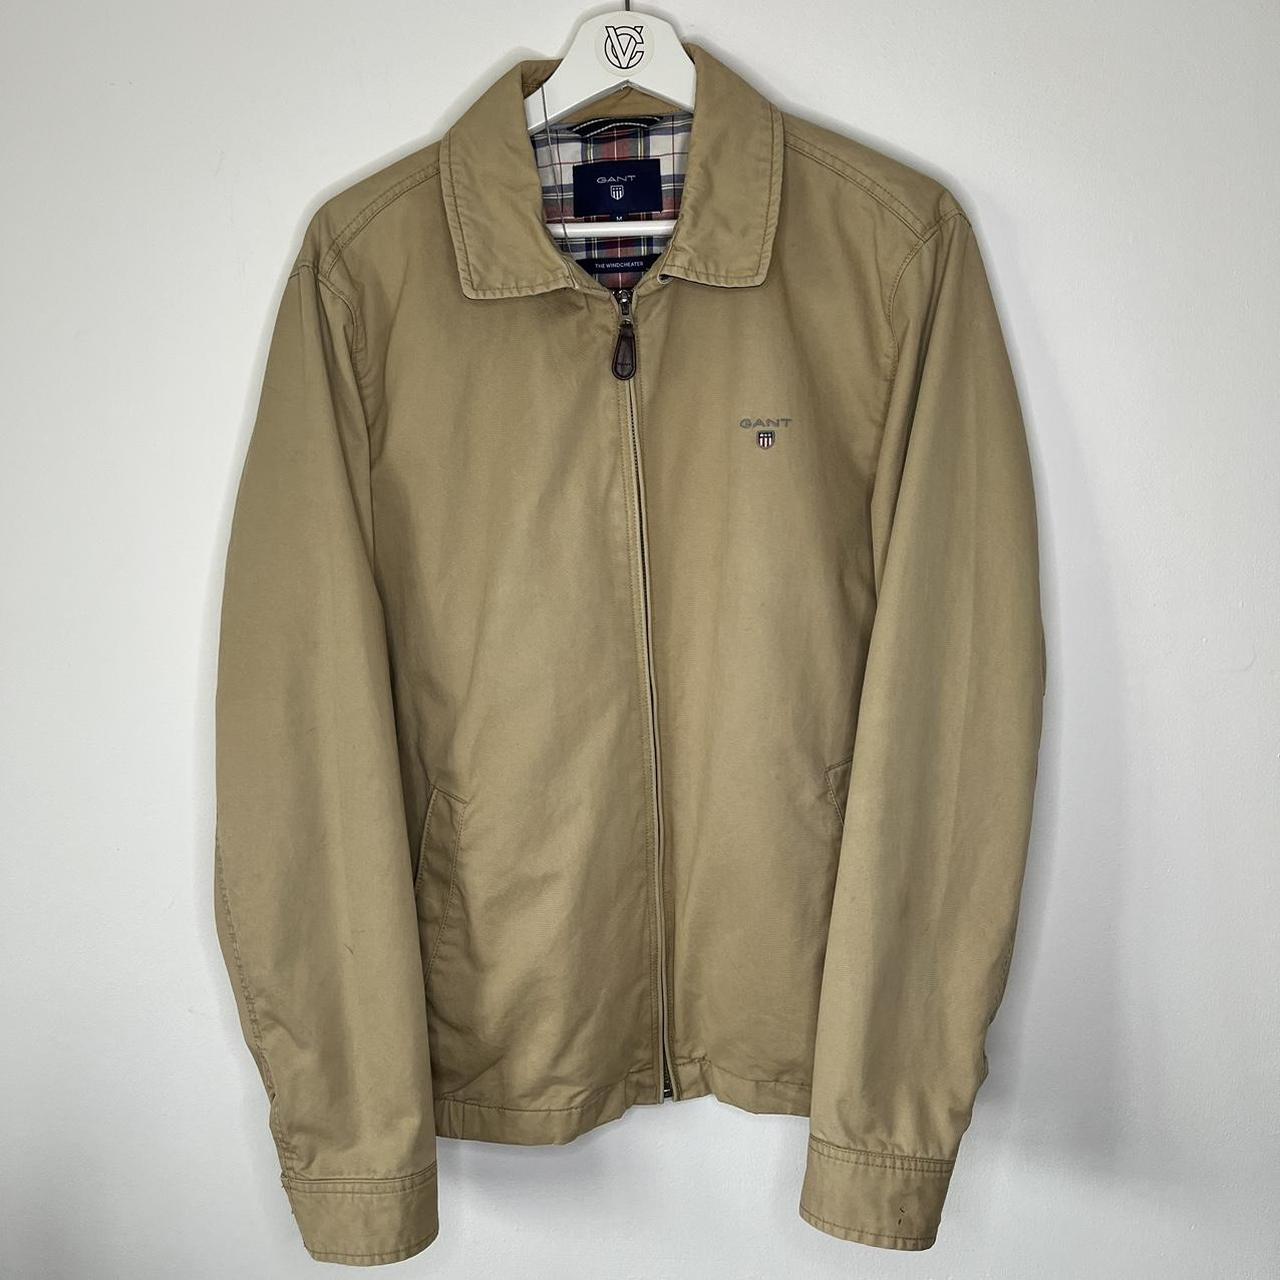 Vintage Gant USA jacket⚪️ Beige Gant jacket. Great... - Depop